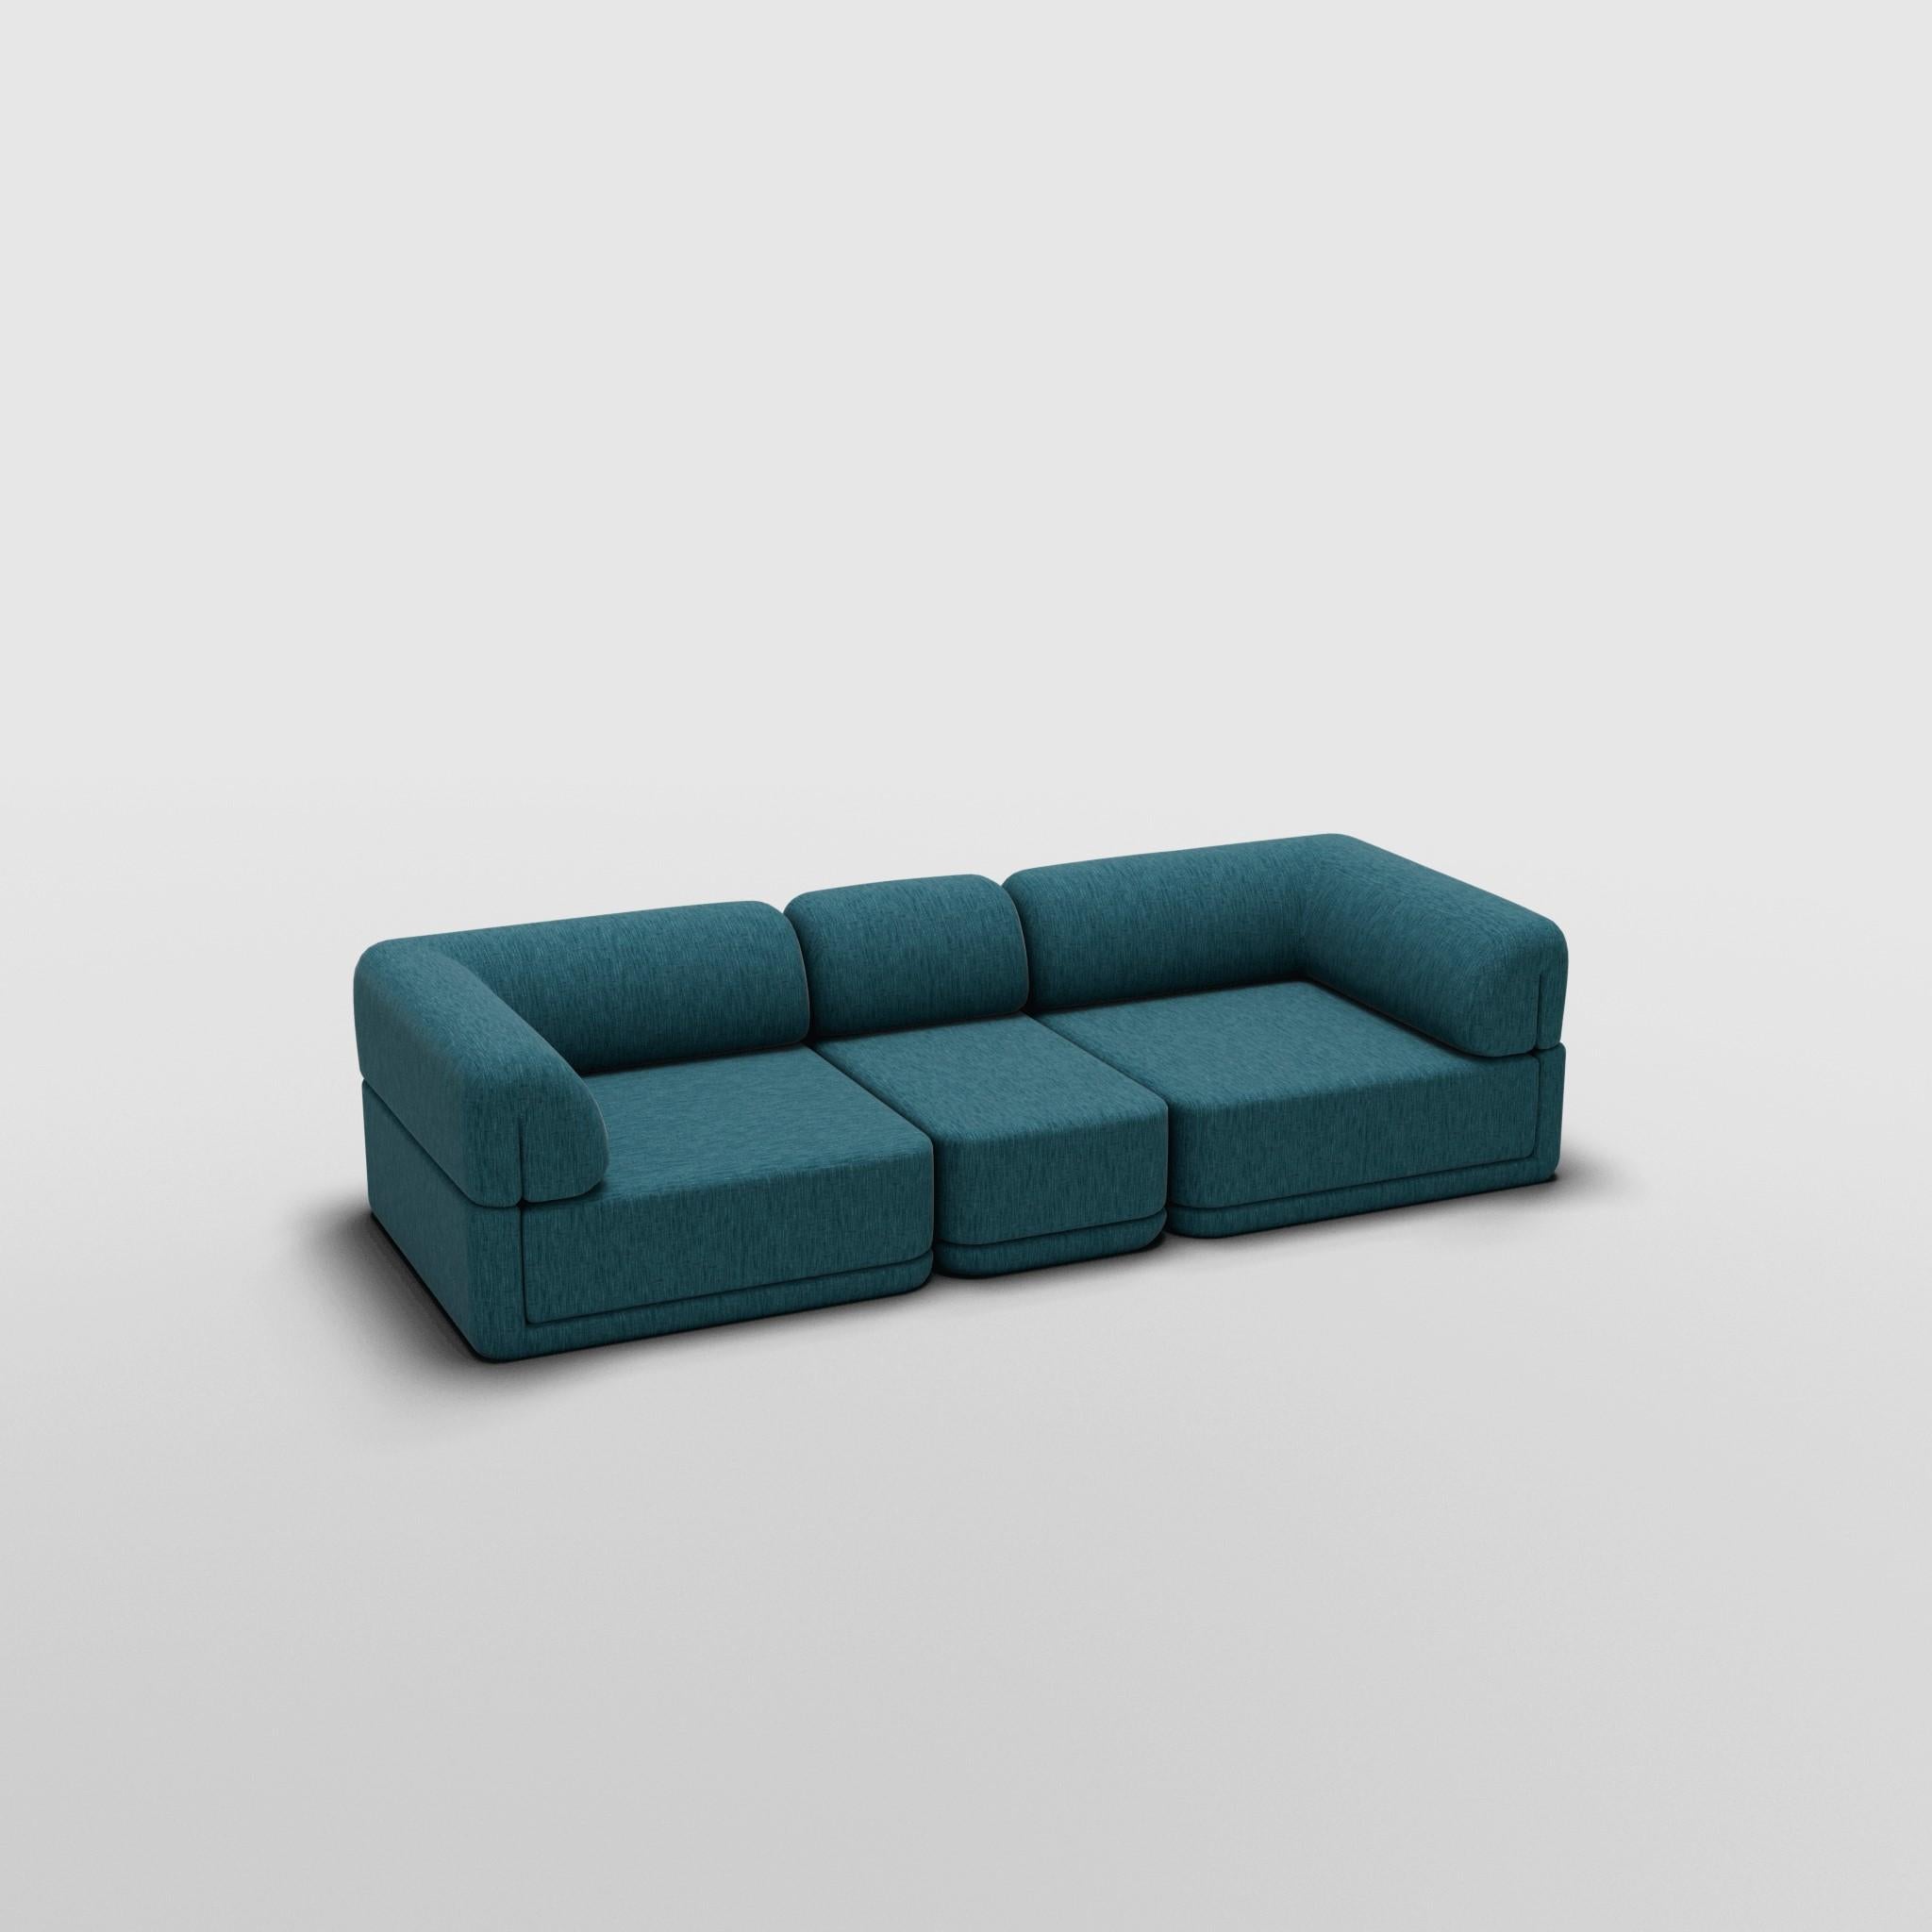 Sofa Slim Set - Inspiré par les meubles de luxe italiens des années 70

Découvrez le canapé Cube, où l'art rencontre l'adaptabilité. Son design sculptural et son confort personnalisable créent des possibilités infinies pour votre espace de vie.